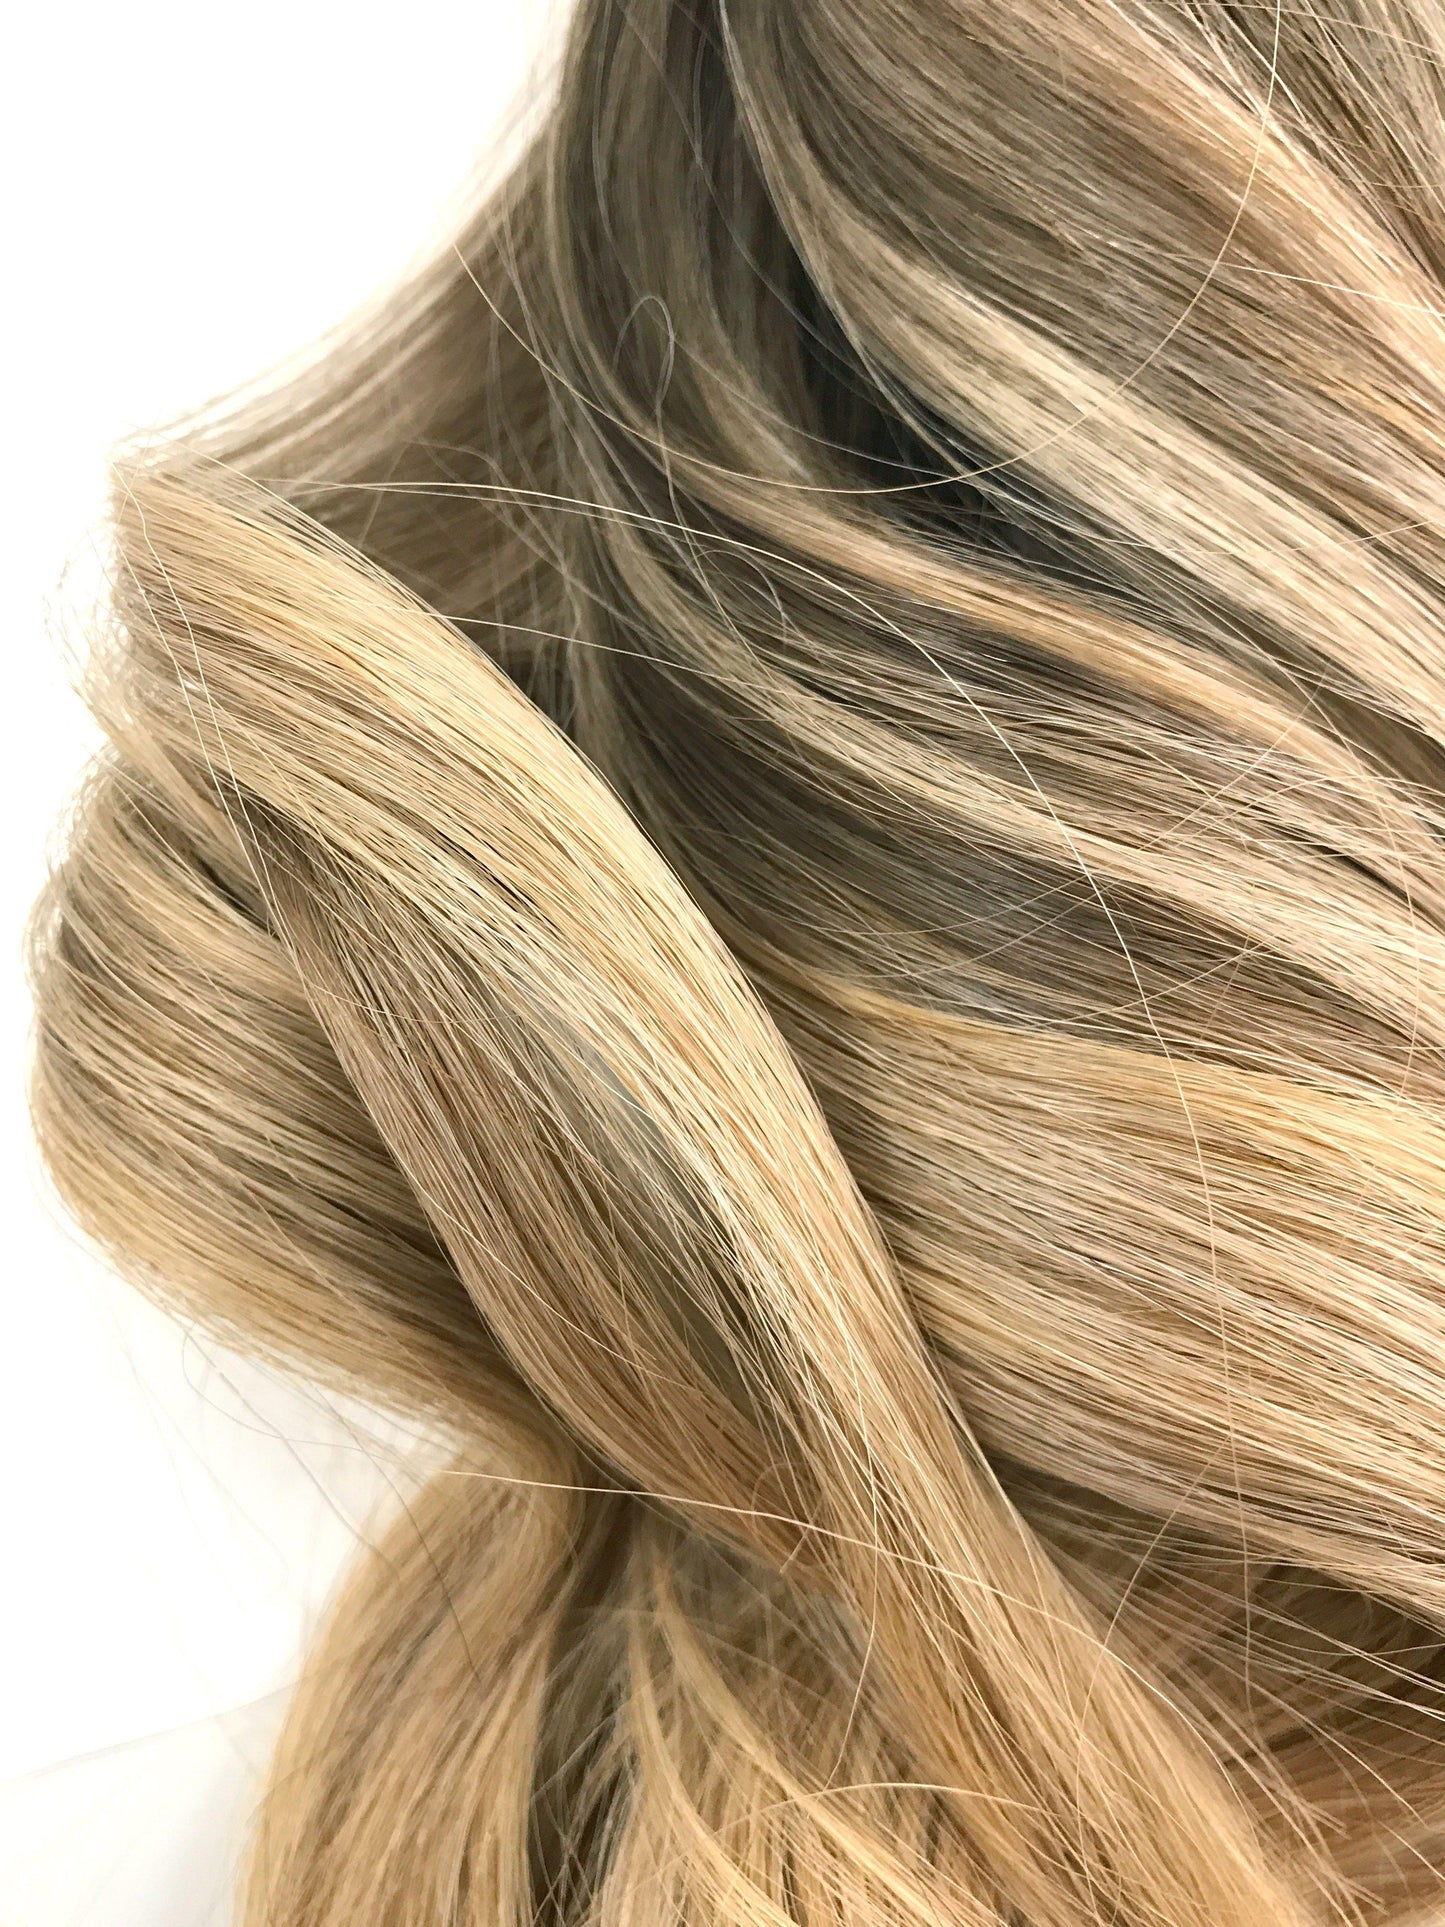 תוספות שיער אירופיות Balayage ombre-שיער ויופי בתולה, תוספות השיער הטובות ביותר, שיער אנושי בתול אמיתי.